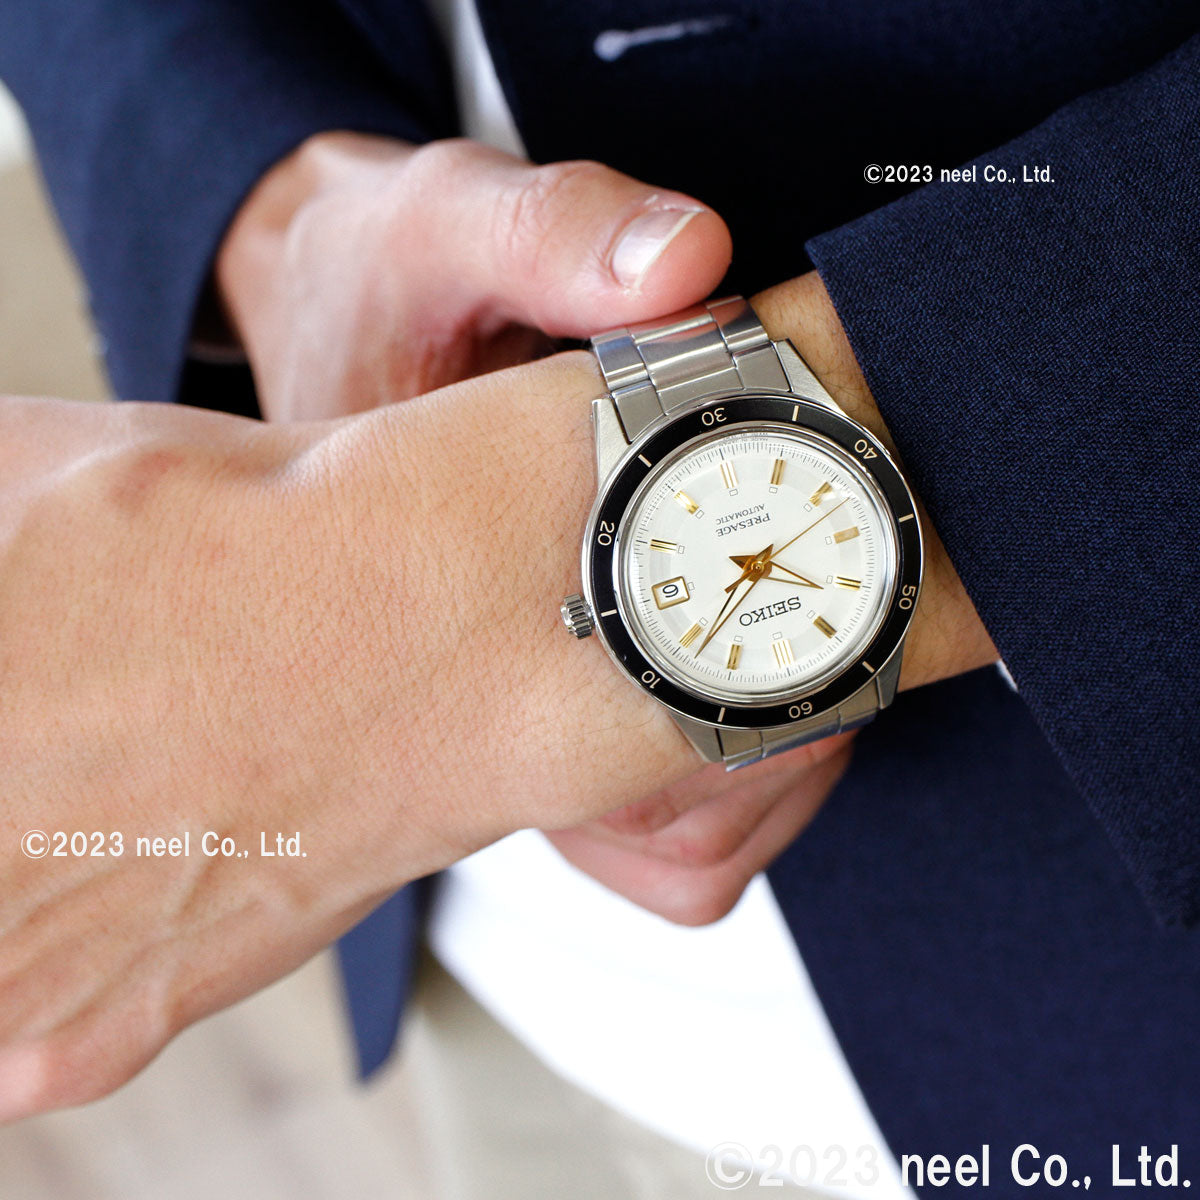 セイコー プレザージュ SEIKO PRESAGE 自動巻き メカニカル 腕時計 メンズ ベーシックライン 3針カレンダーモデル SARY193